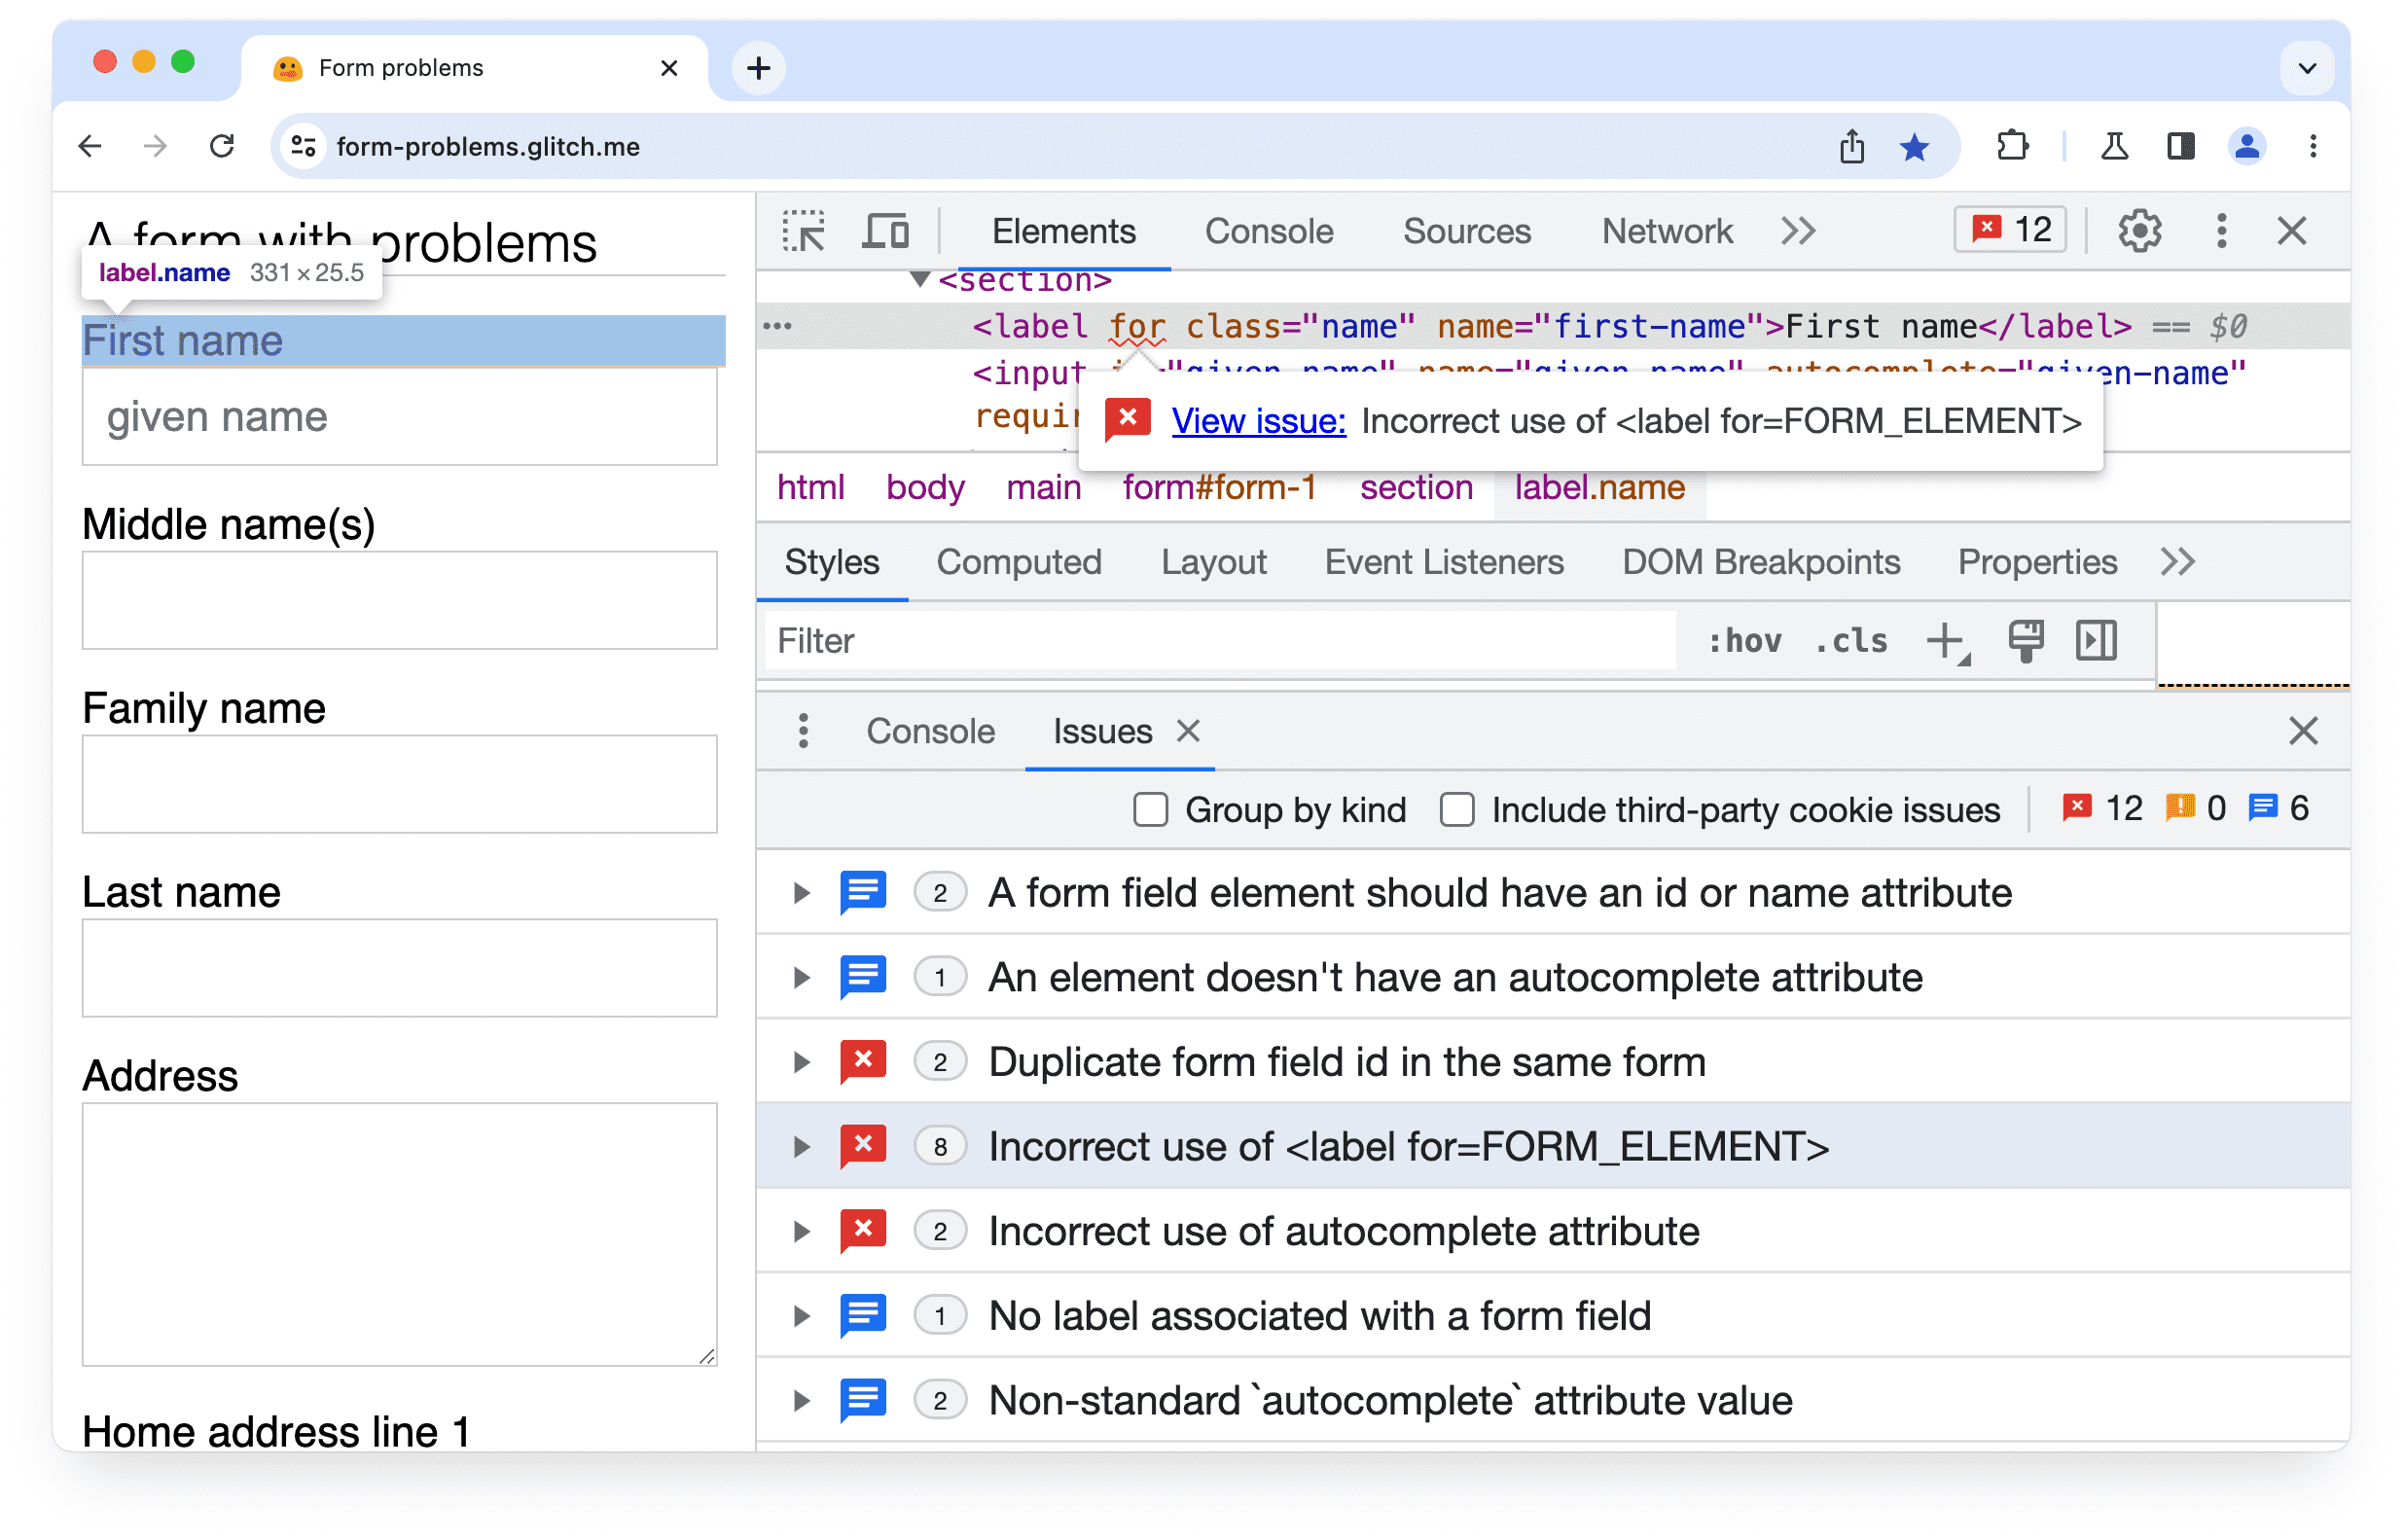 Chrome DevTools
menampilkan masalah dengan atribut untuk elemen formulir.